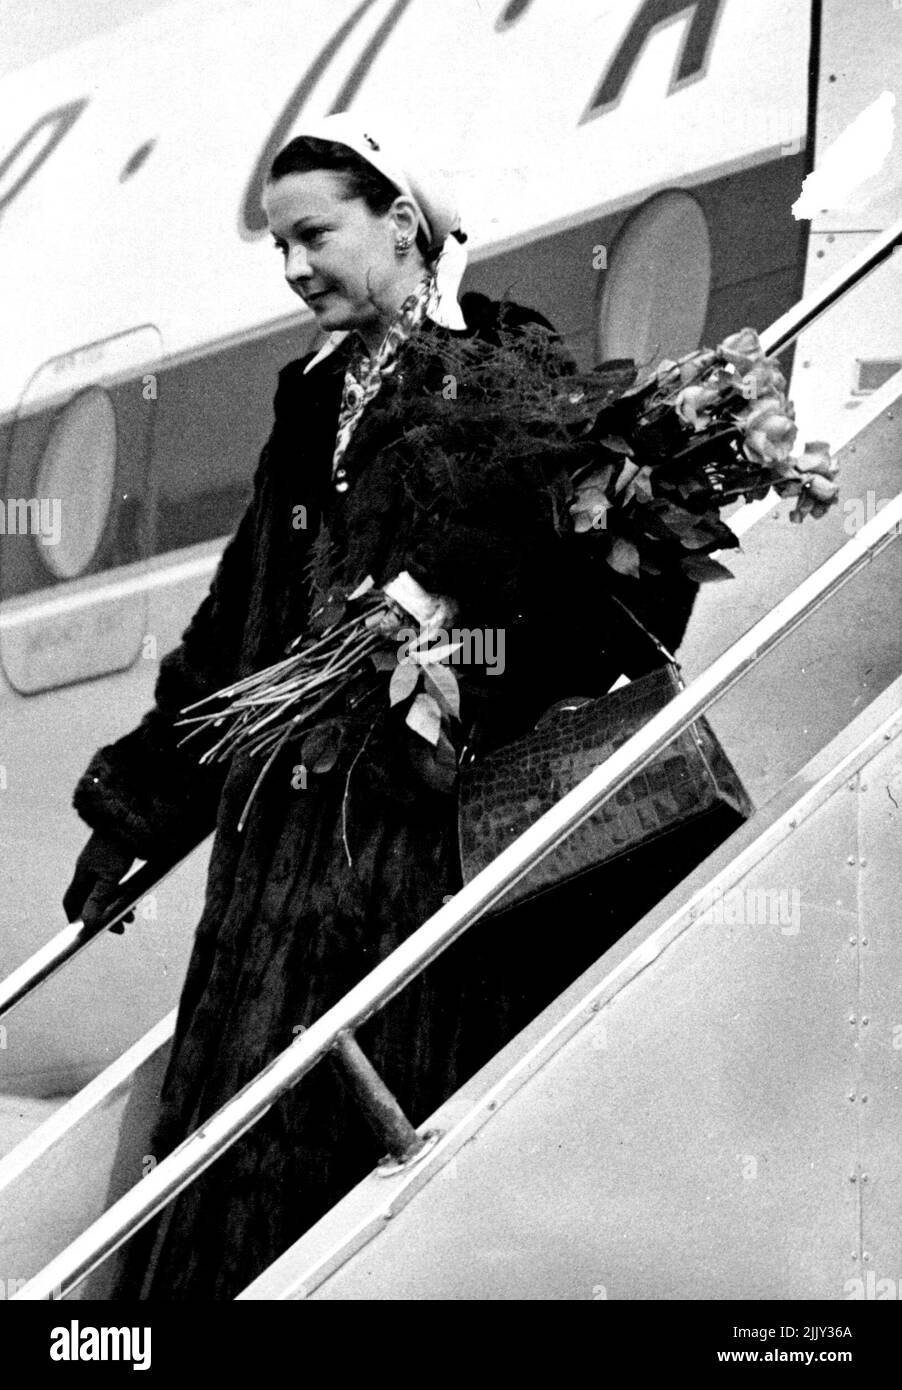 Vivien Leigh kommt am Flughafen London an - Vivien Leigh verlässt heute Nachmittag das Flugzeug am Flughafen London. Vivien Leigh, die an einem schweren Nervenzusammenbruch leidet, kam heute Nachmittag mit ihrem Mann, Sir Laurence Olivier, mit einem Flugzeug aus Amerika am Flughafen London an. Wegen des schlechten Wetters, war das Flugzeug drei Stunden zu spät. 20. März 1953. (Foto von Fox Photos). Stockfoto